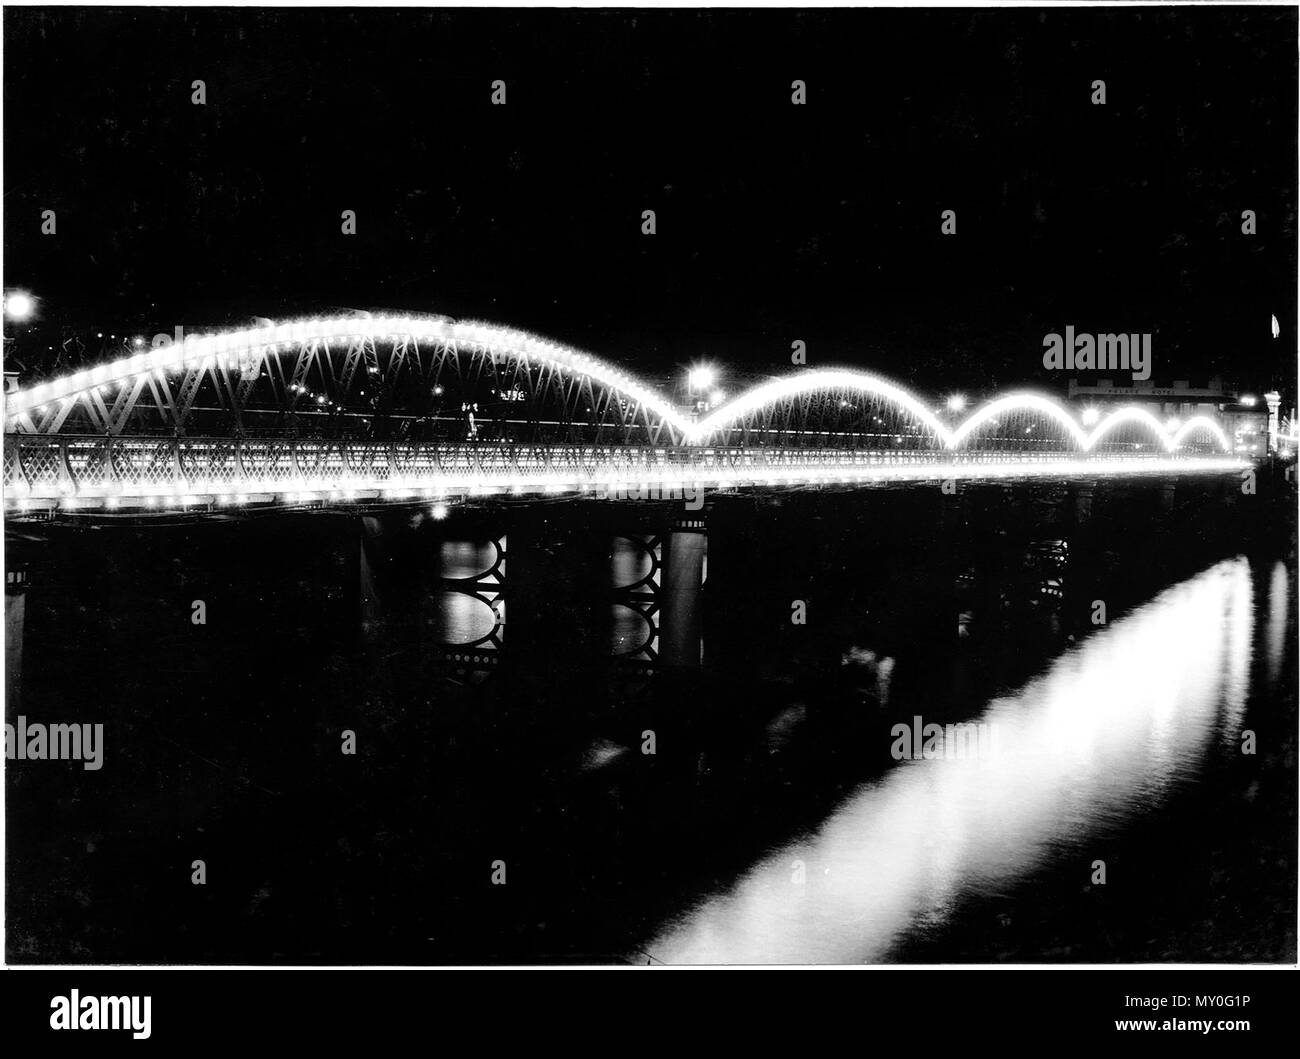 Il Ponte Victoria luminarie - Royal Visita, Brisbane, marzo 1954. Il Courier-Mail 23 febbraio 1954 ponti accesa fino a notte ROYAL TOUR luminarie sul ponte Victoria e Story Bridge sarà acceso a notte. Il Premier (Sig. Gair) ieri ha detto che questa sarebbe stata la prima di una serie di tali prove. Altri potrebbero essere: - domani notte: South Brisbane Memorial Park South Brisbane Town Hall, Centenario luogo e Albert, Alice e Wickham strade. Giovedì notte: Grey Street Bridge, Incoronazione Drive e Davies Park. Venerdì notte: il Municipio e altre città luminarie, inclusi Foto Stock